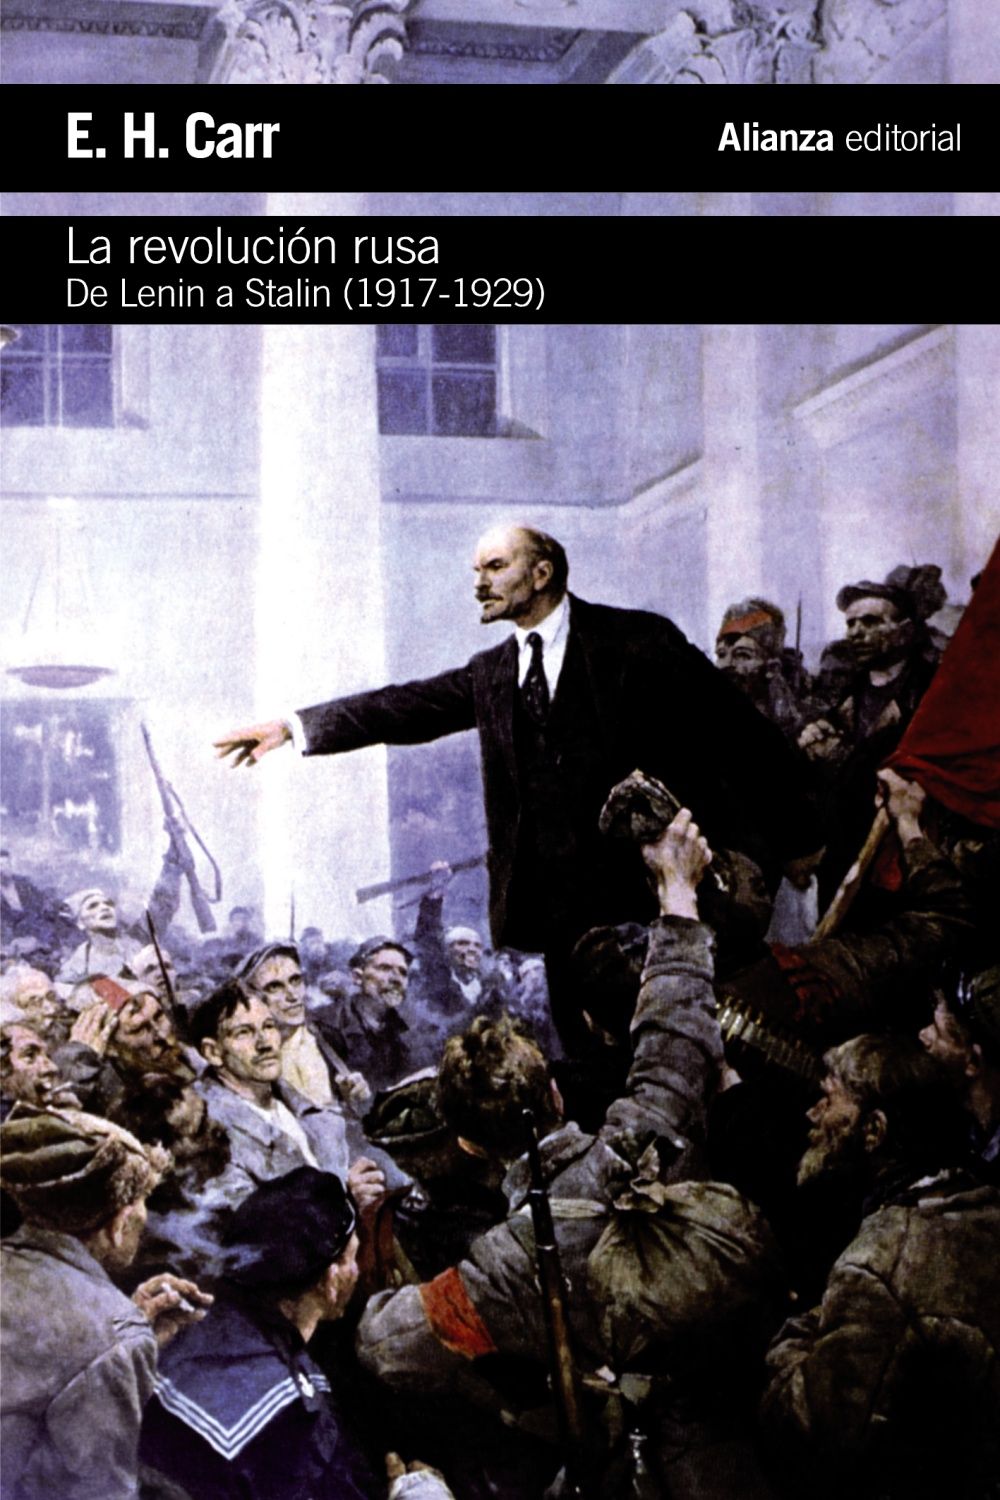 LA REVOLUCIÓN RUSA. DE LENIN A STALIN, 1917-1929